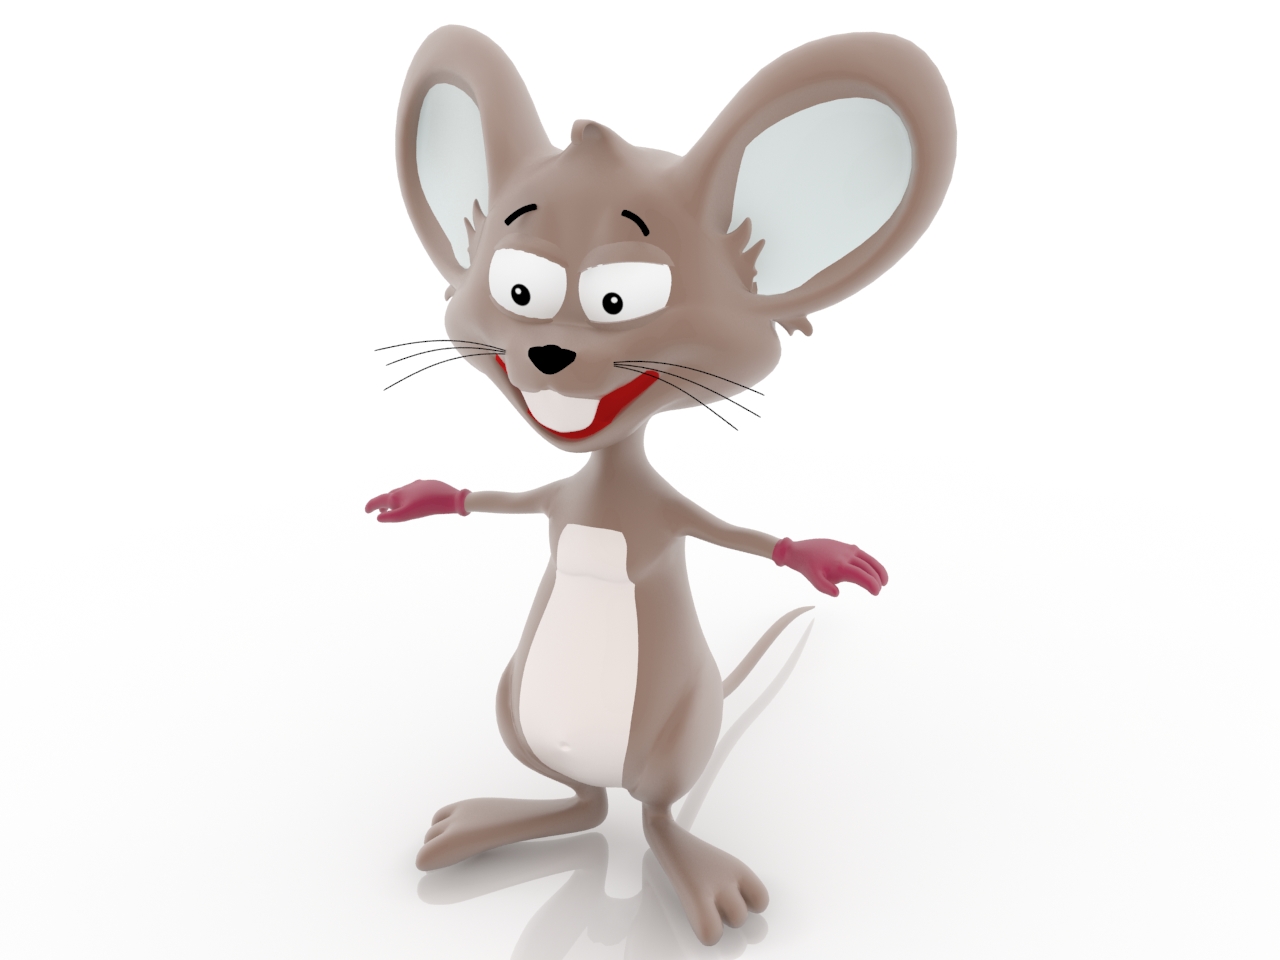 Модели мышей